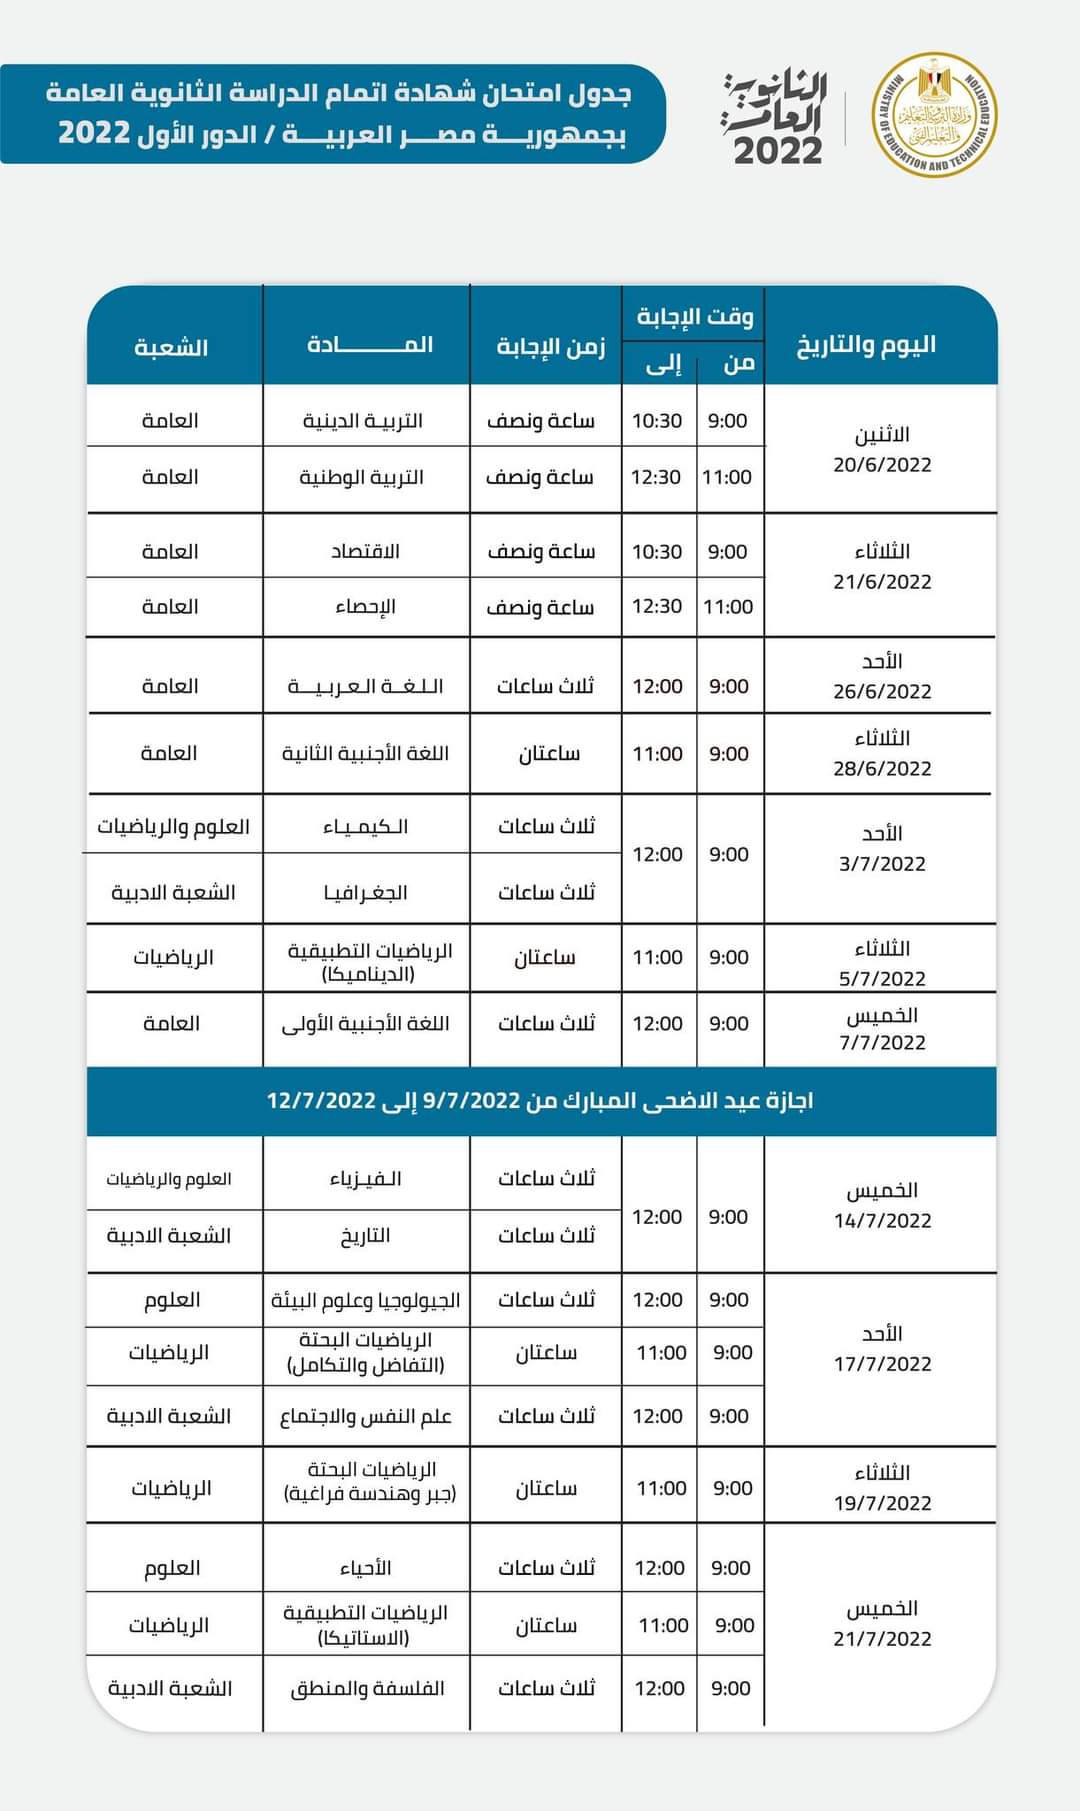 جدول امتحانات الثانوية العامة 2022 الرسمي المُعلن من وزارة التربية والتعليم "ادبي وعلمي"